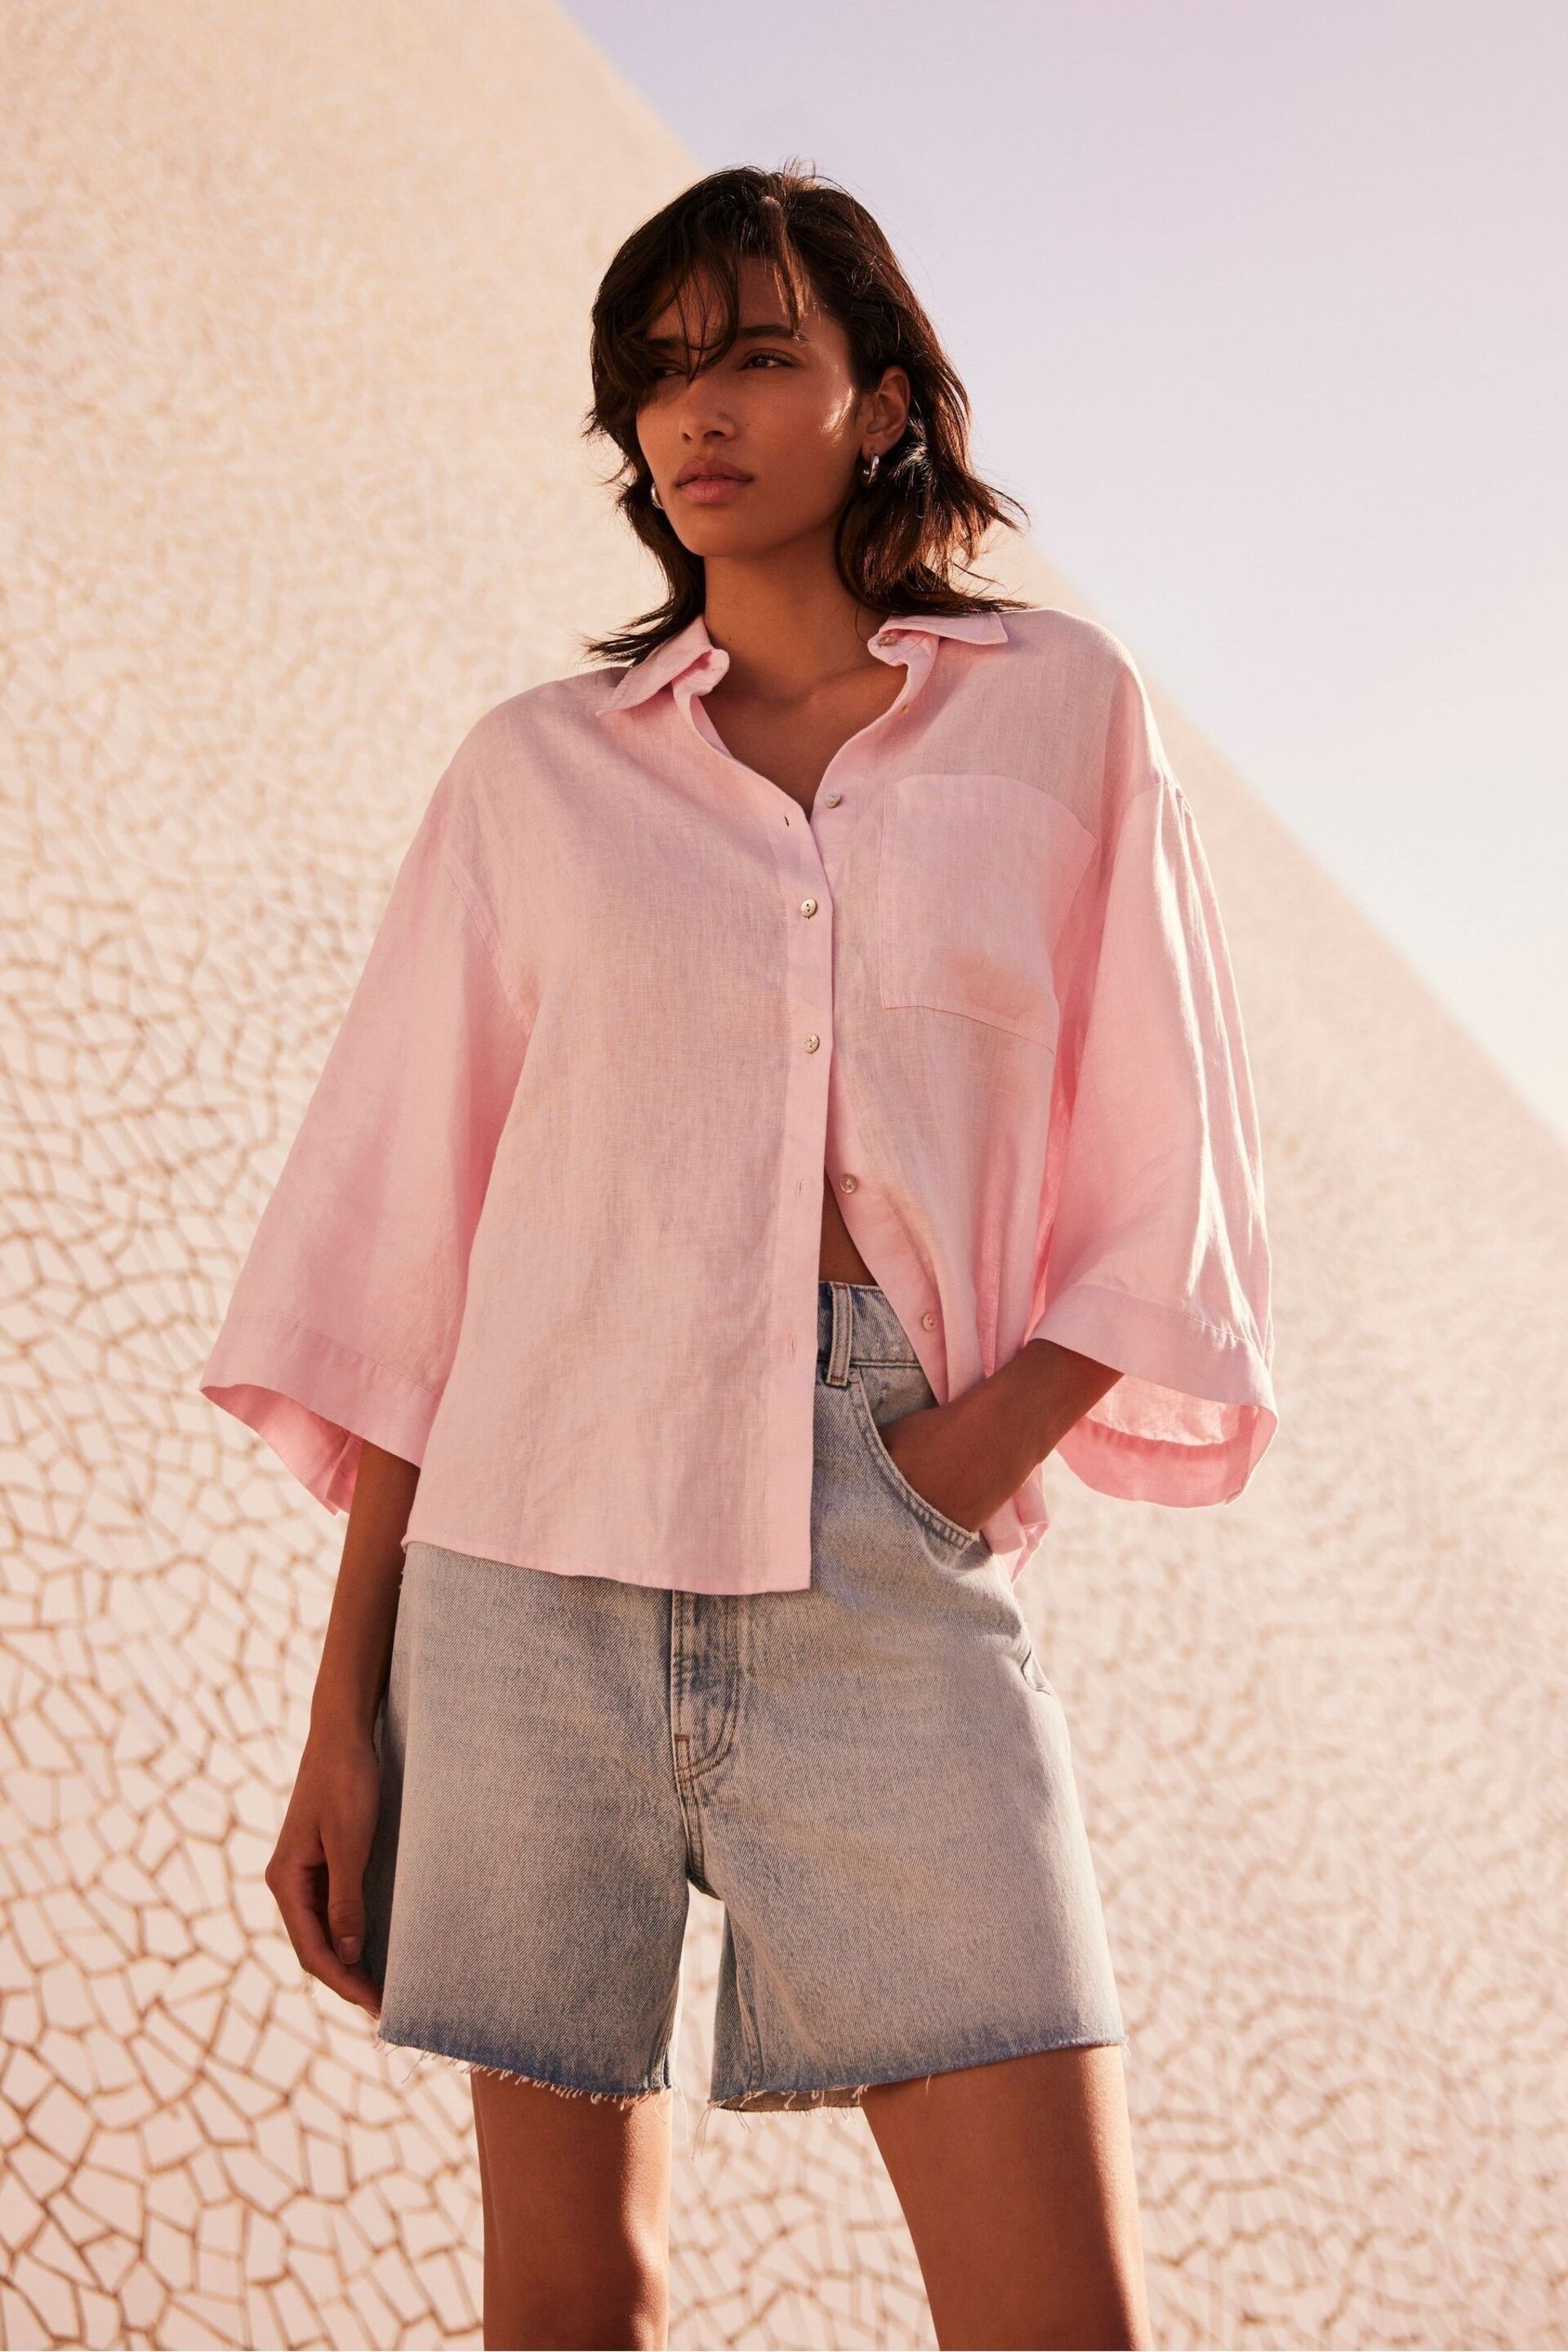 Mint Velvet Pink Linen Shirt - Image 1 of 4